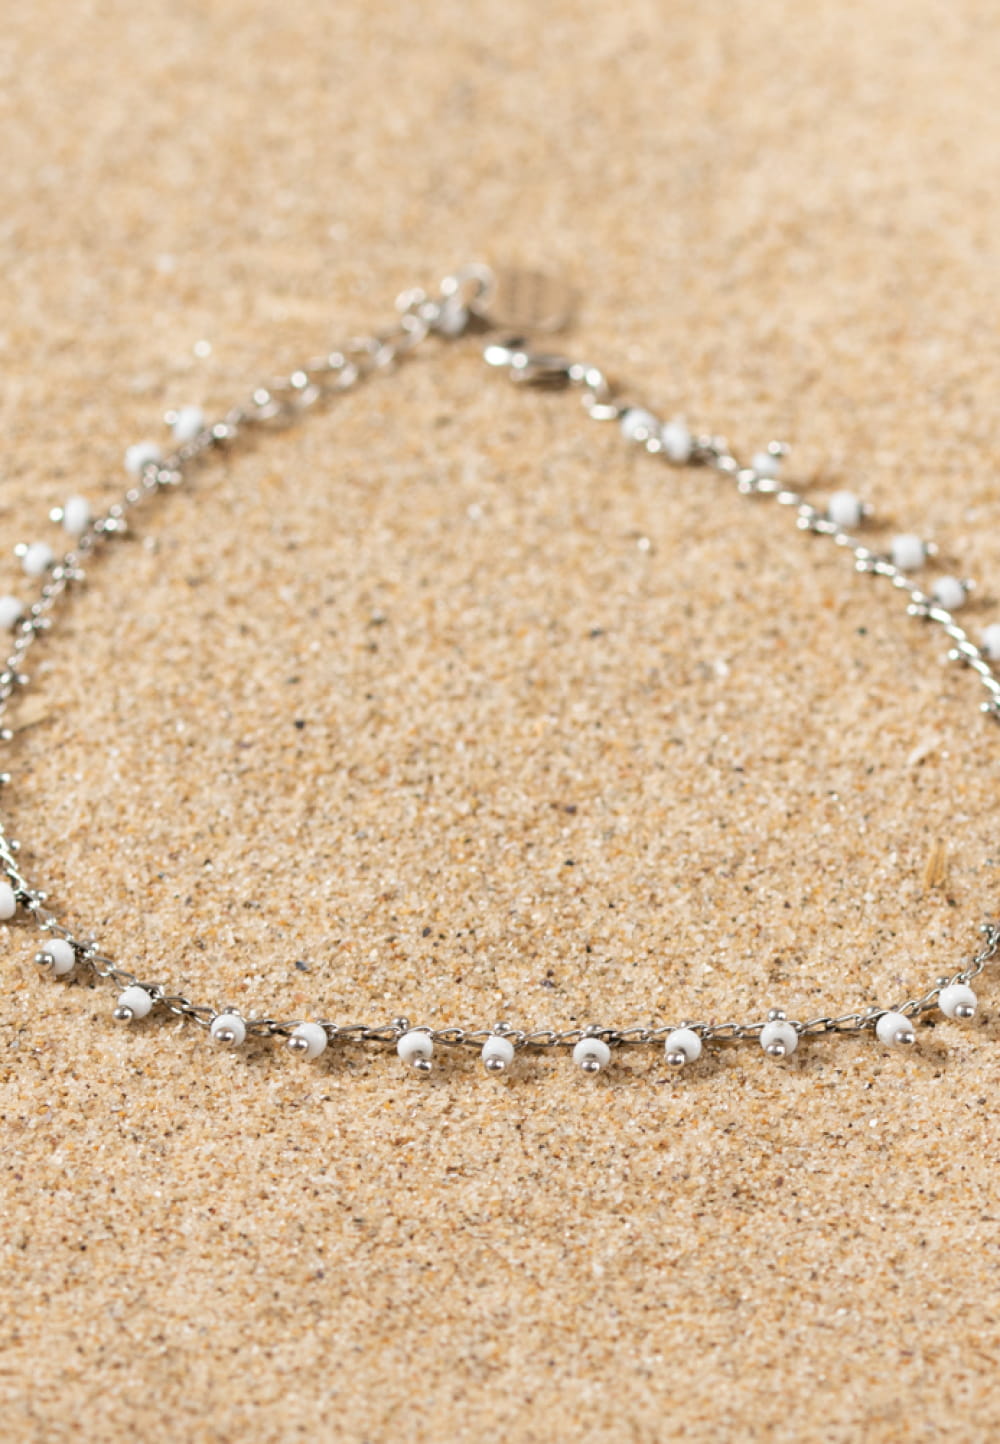 Bracelet de cheville en chaine argenté et perles blanc : Folk